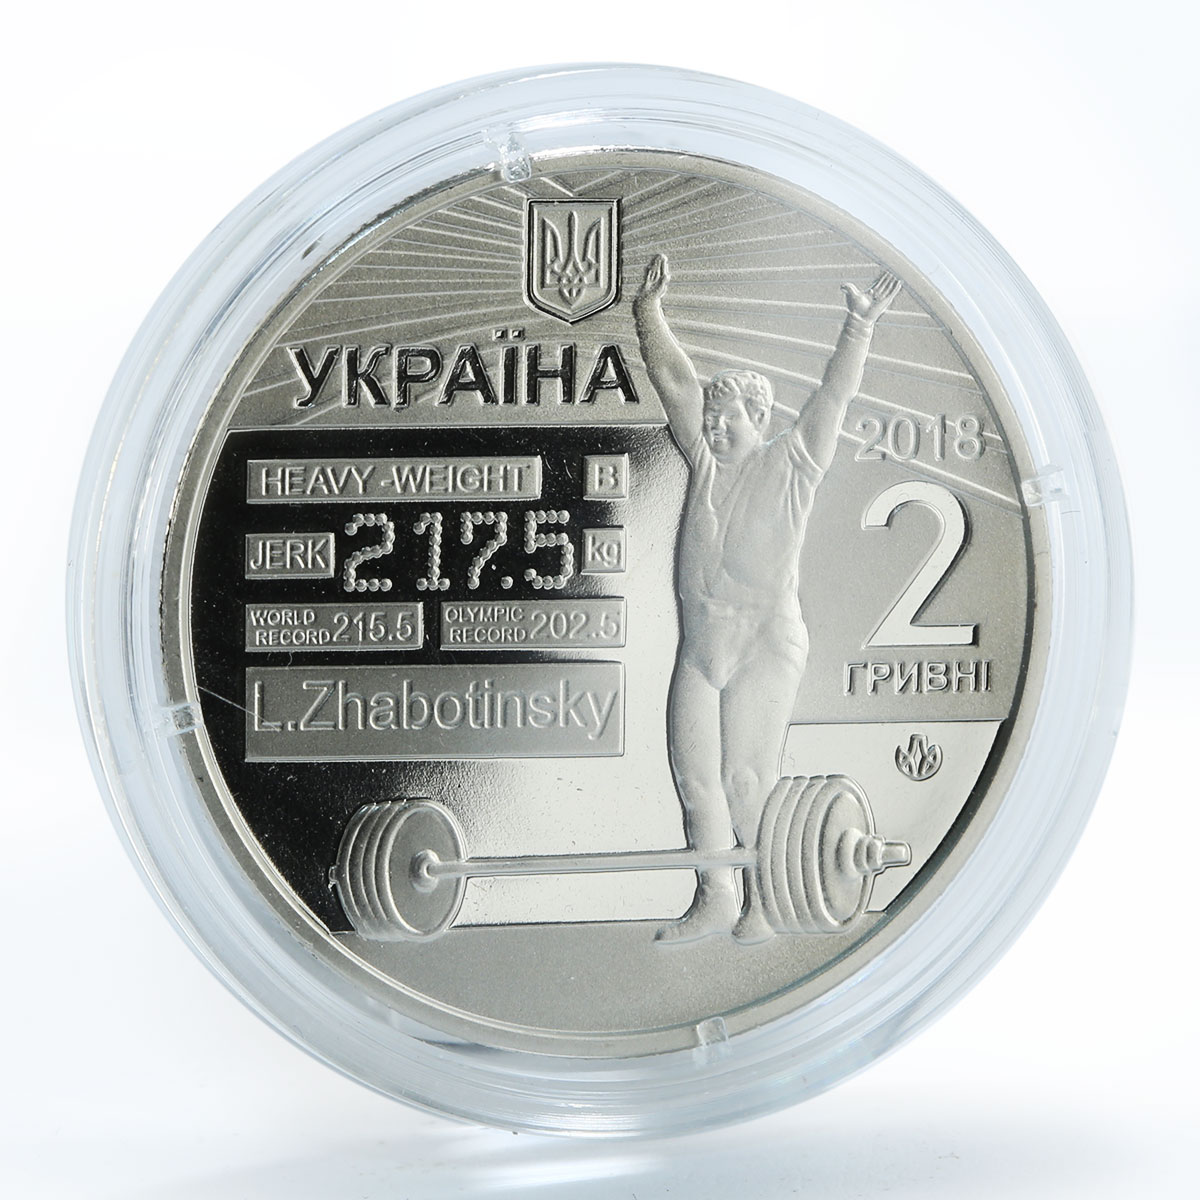 Ukraine 2 hryvnia Leonid Zhabotinsky 1938-2016 weightlifter UNC nickel coin 2018